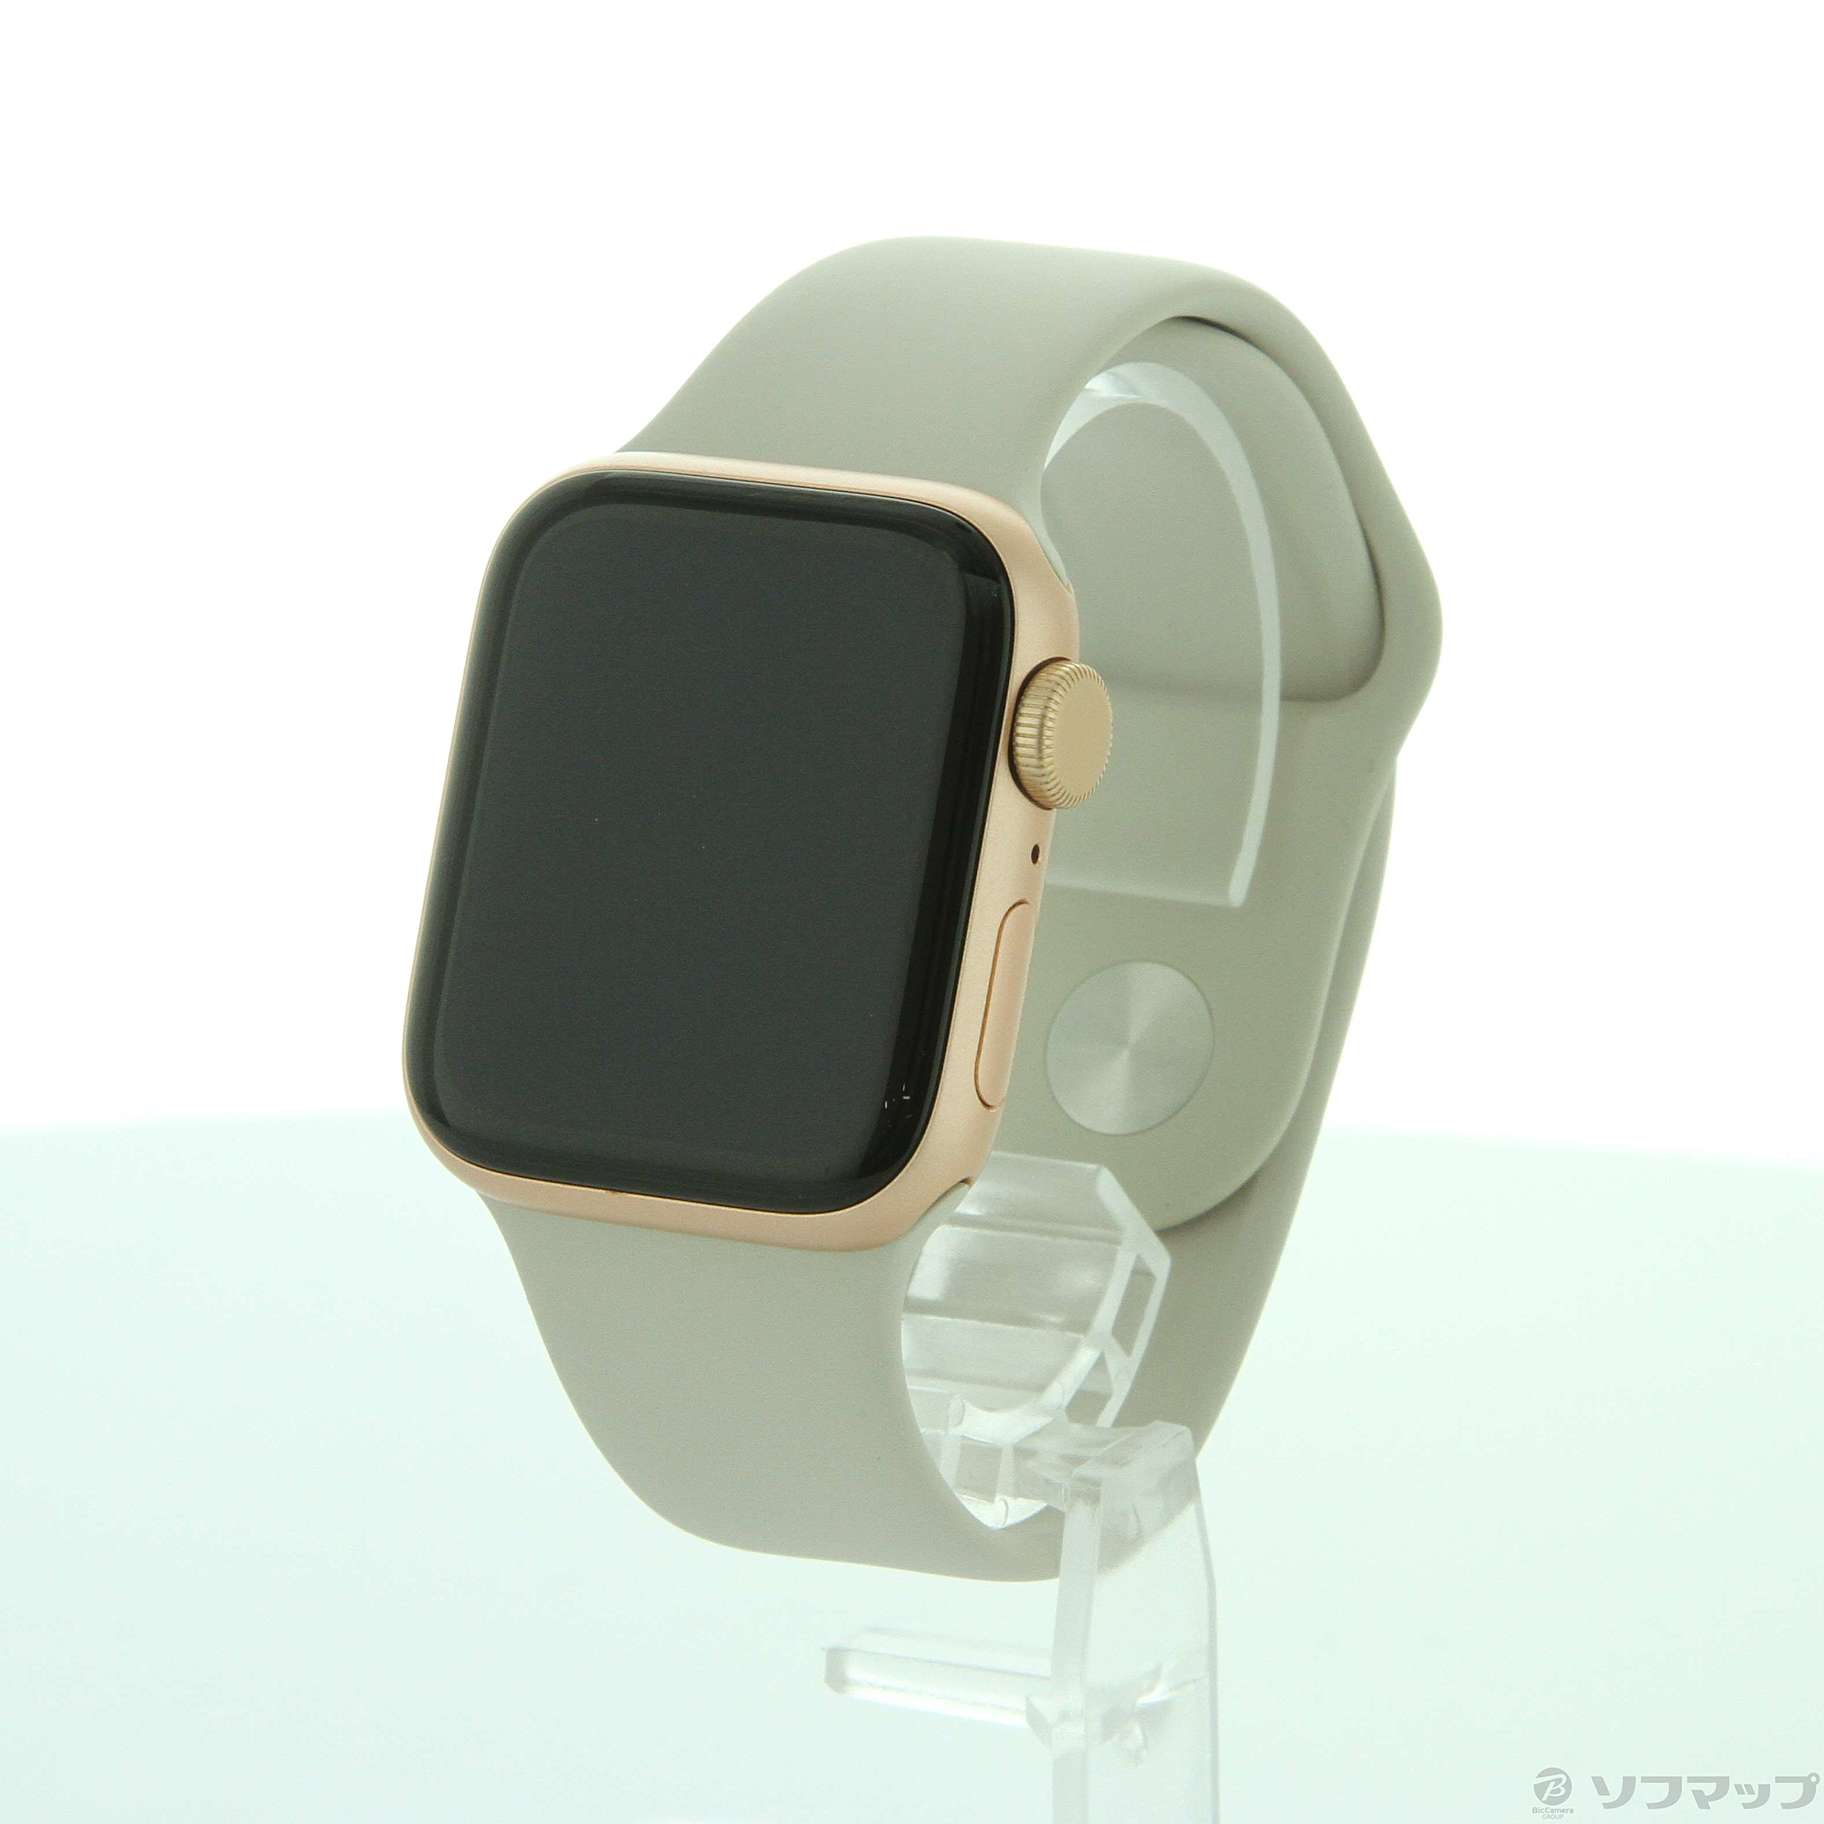 Applewatch アップルウォッチ se 40mm ゴールド